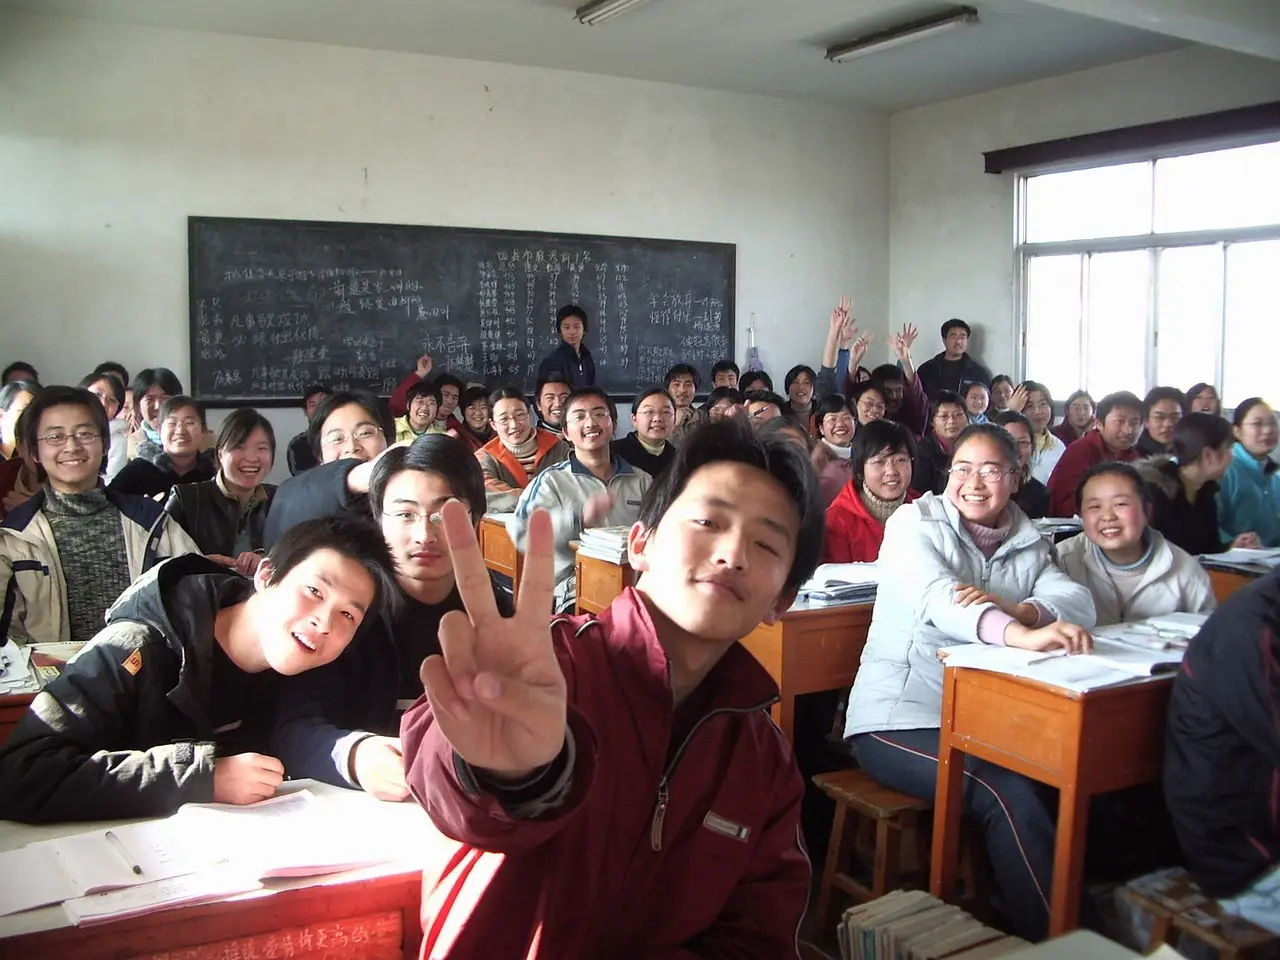 청년- 교실 많은 학생들이 모여앉아 화면을 보고 웃는 모습